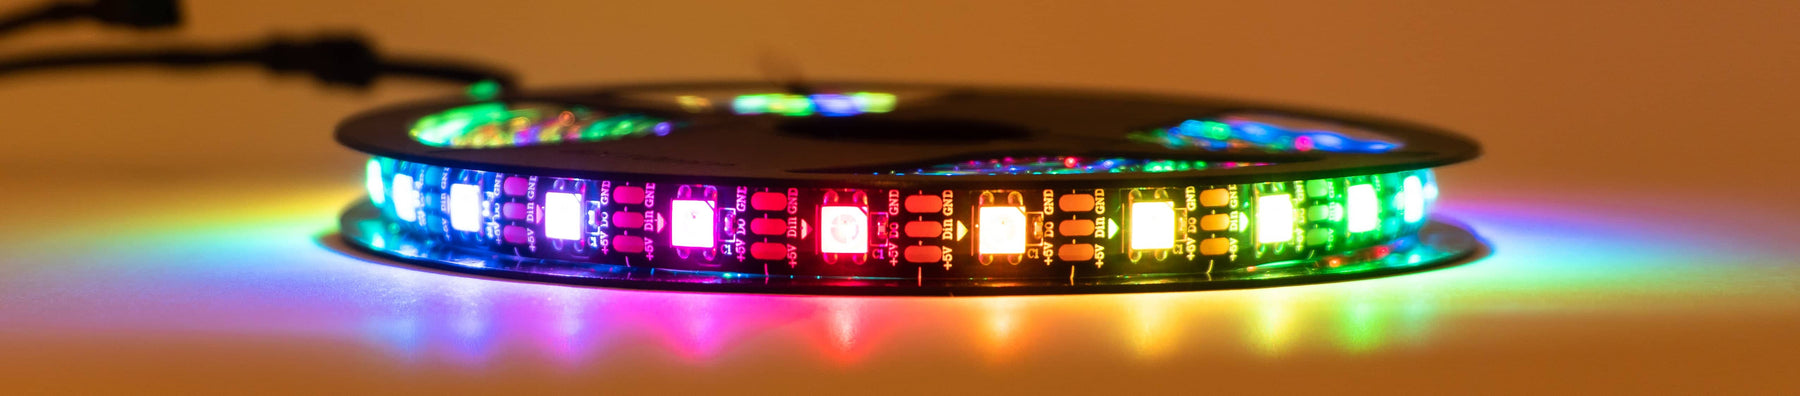 HyperDrive LED Kit